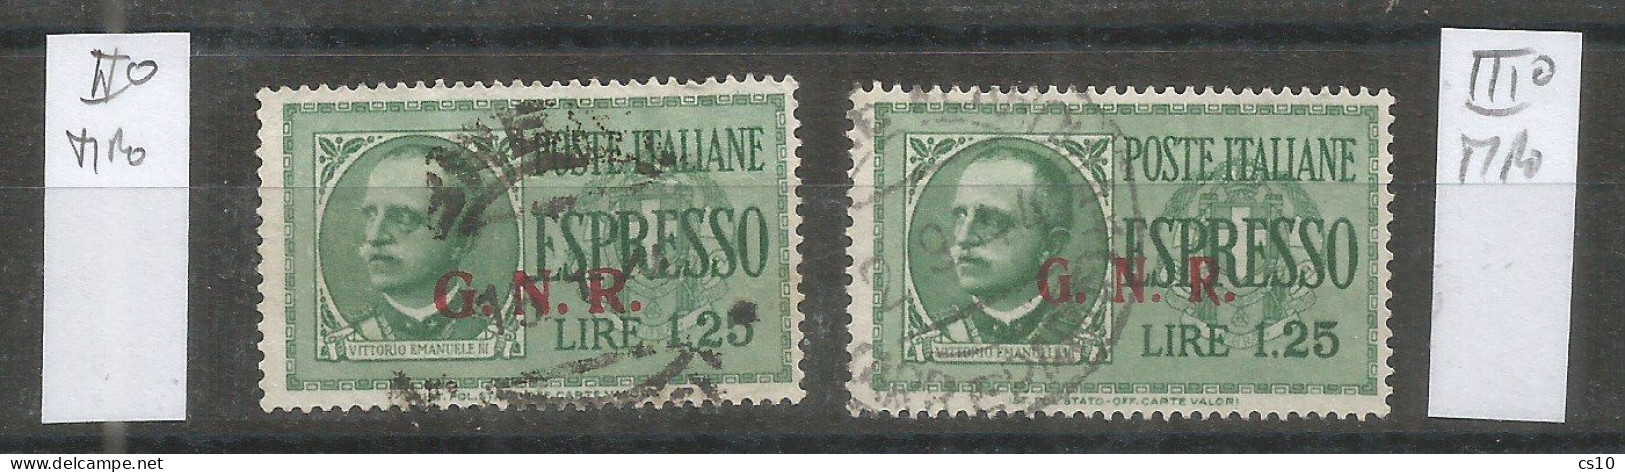 Italia Rep.Sociale Emissioni Guardia Naz. Repubblicana - Espresso L.1,25 USATO  II° Tipo + III° Tipo - Eilsendung (Eilpost)